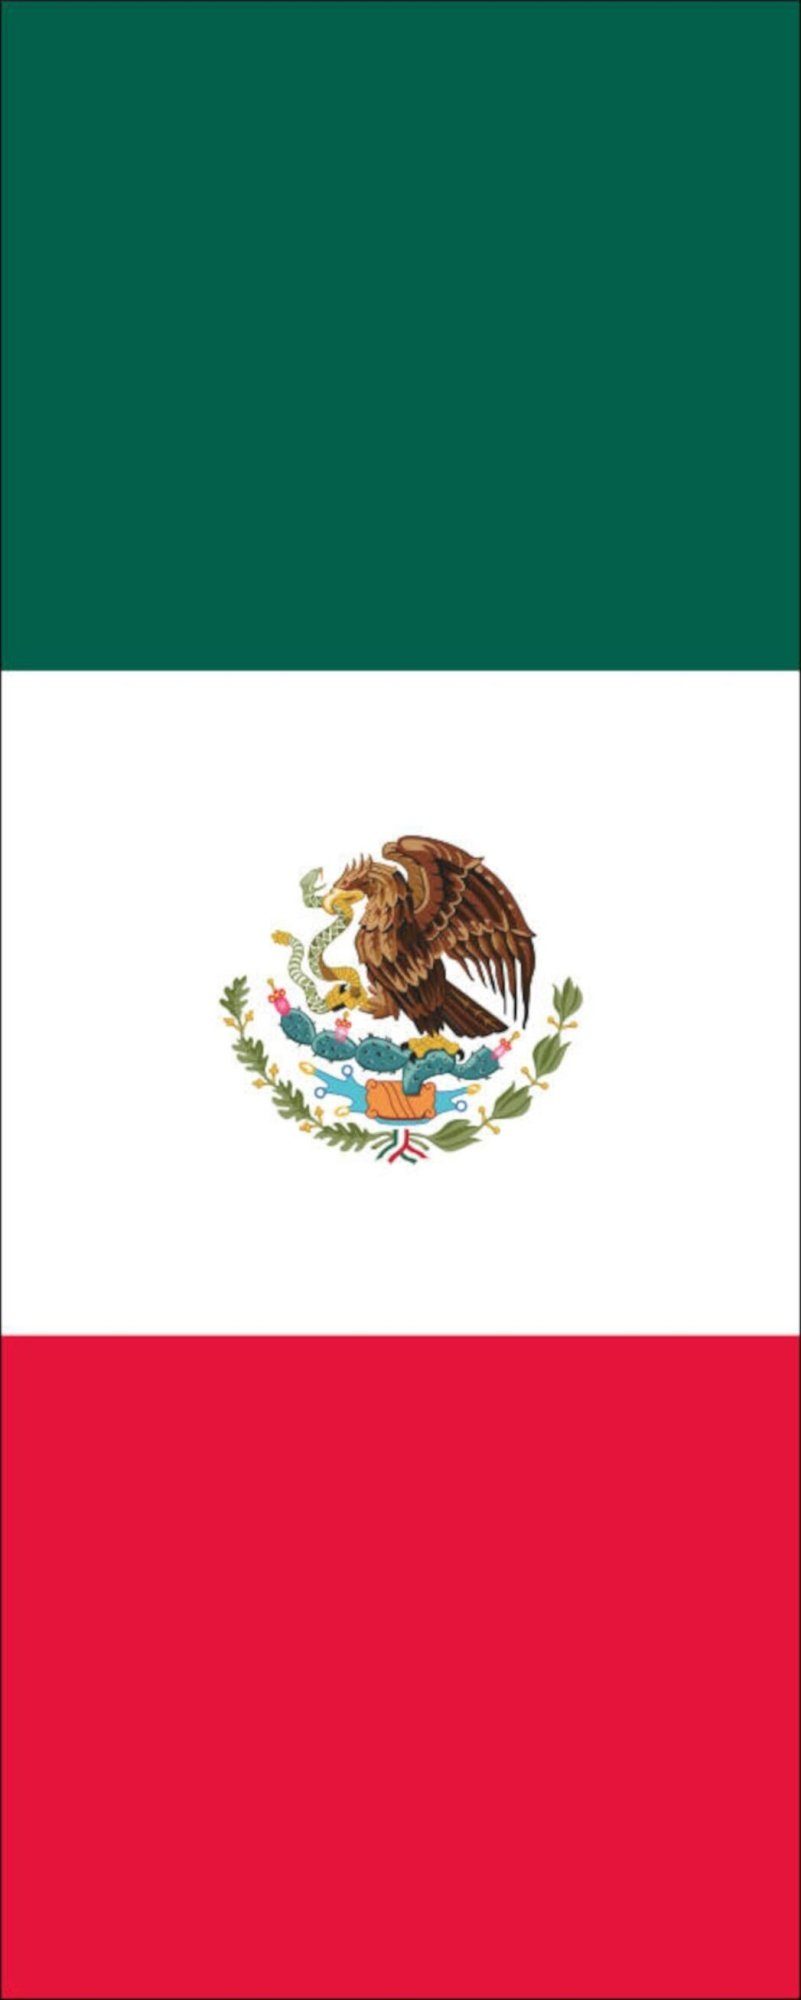 120 Mexiko flaggenmeer Flagge g/m² Hochformat